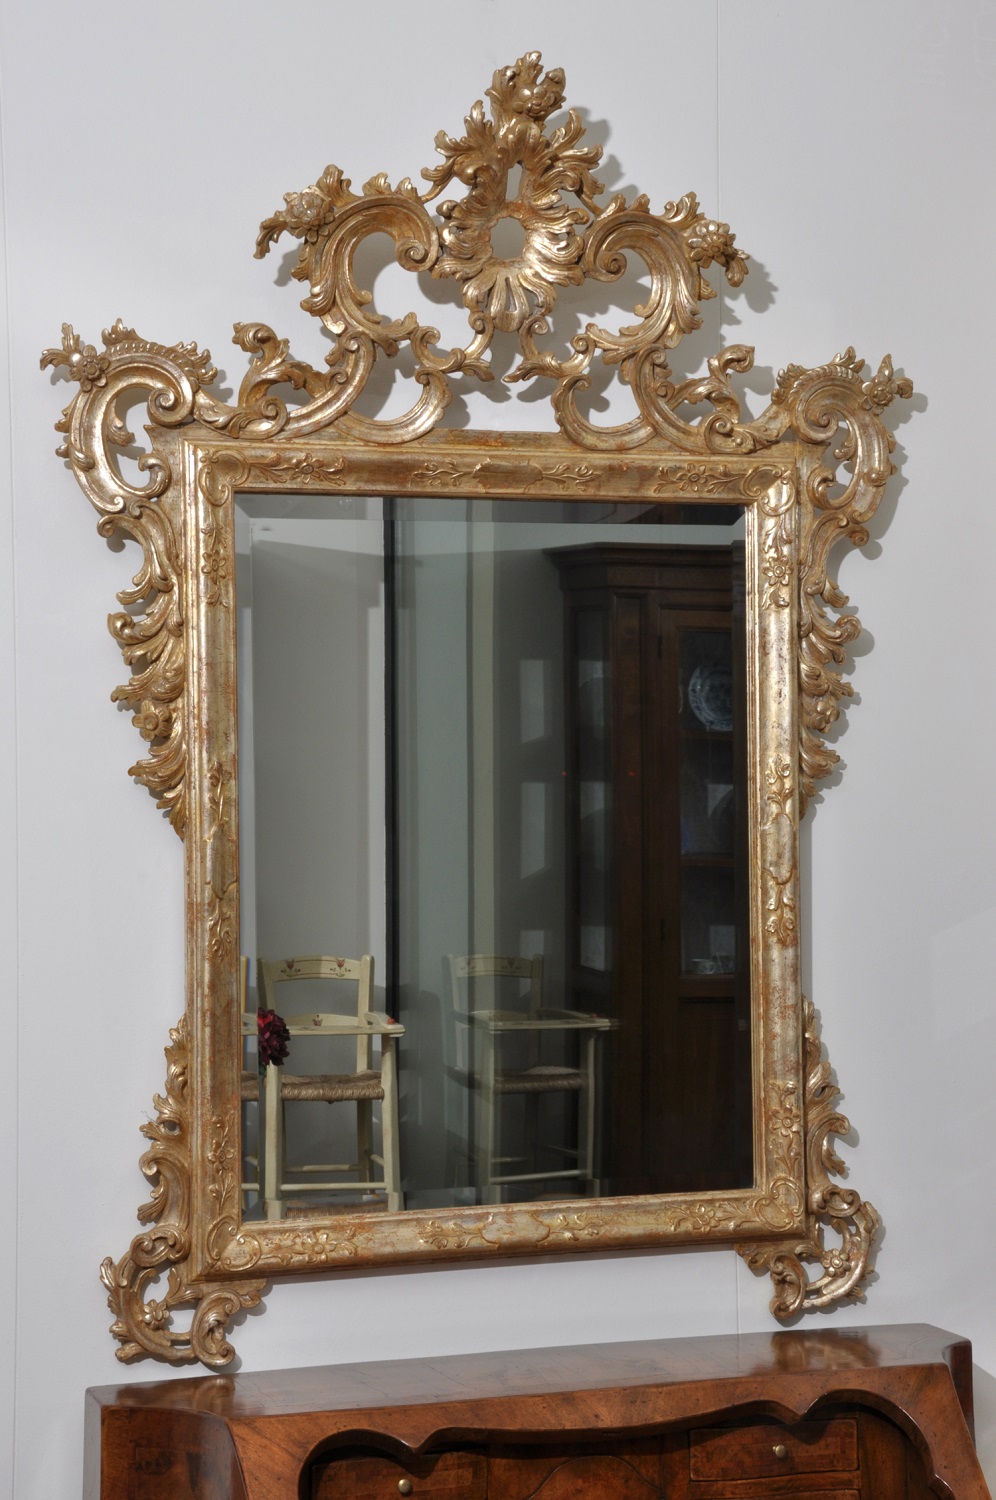 specchiera veneziana intagliata e scolpita a mano prodotta nello stile classico Luigi XV arredo di lusso made in Italy laccato in foglia oro e dorato scolpita su legno di tiglio massello